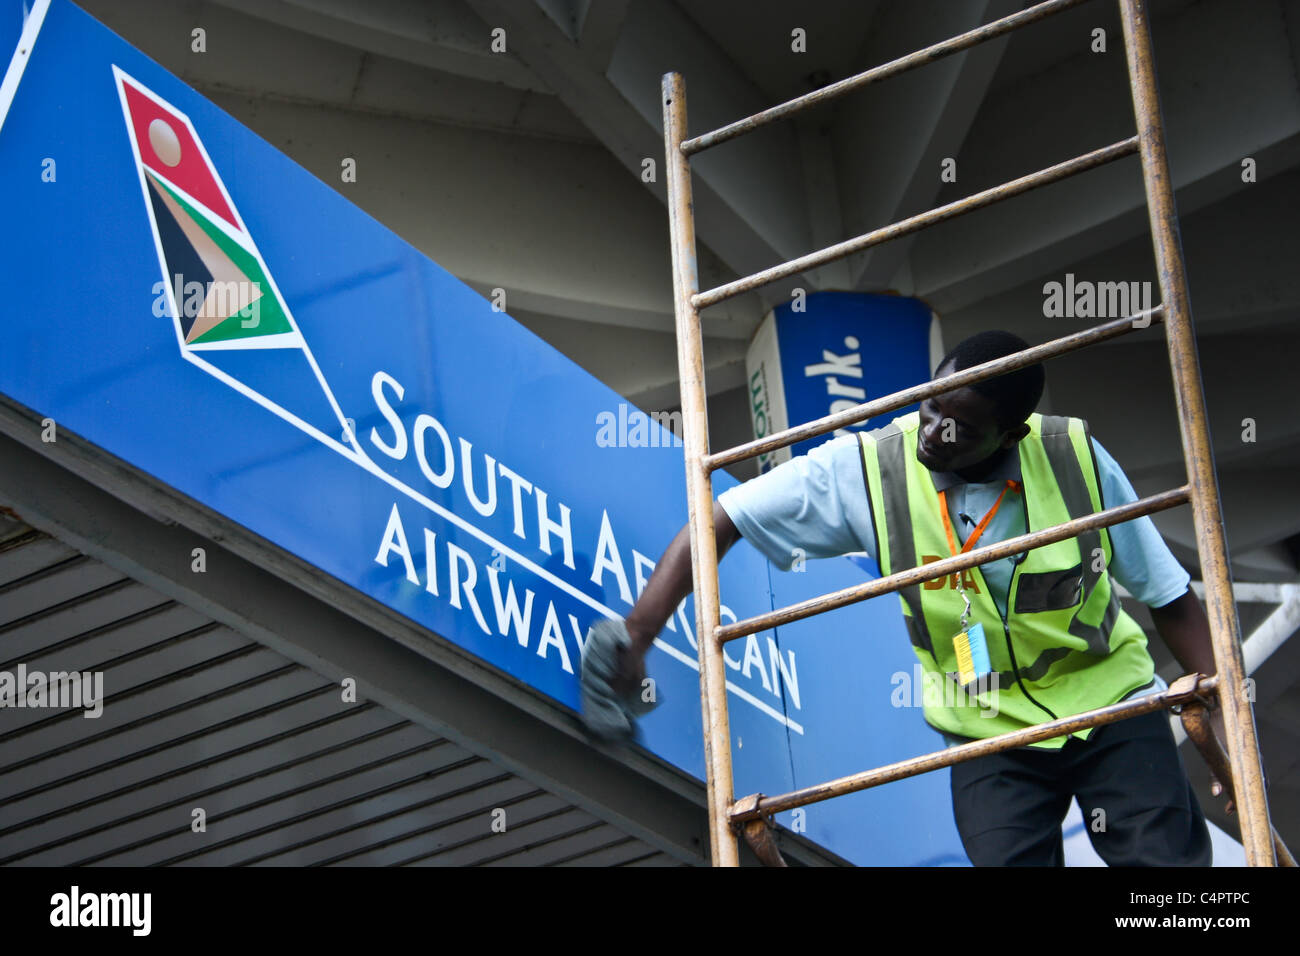 Soiuth Africa Airways sign Stock Photo